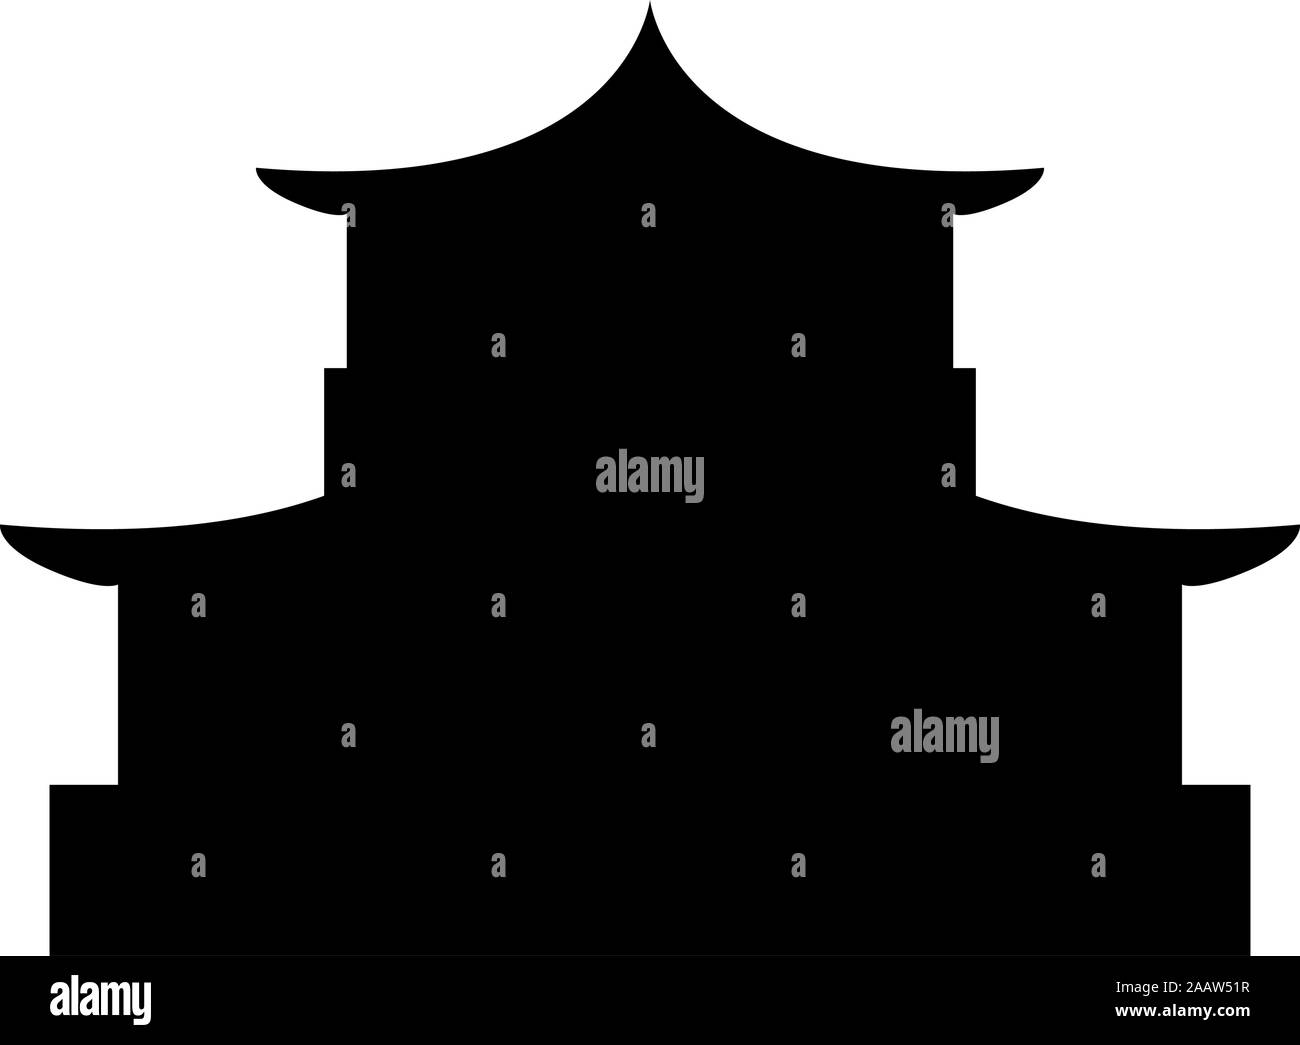 Chinesische Haus Silhouette der traditionellen asiatischen Pagode Japanische dom Fassade Symbol Farbe schwarz Vector Illustration Flat Style simple Image Stock Vektor